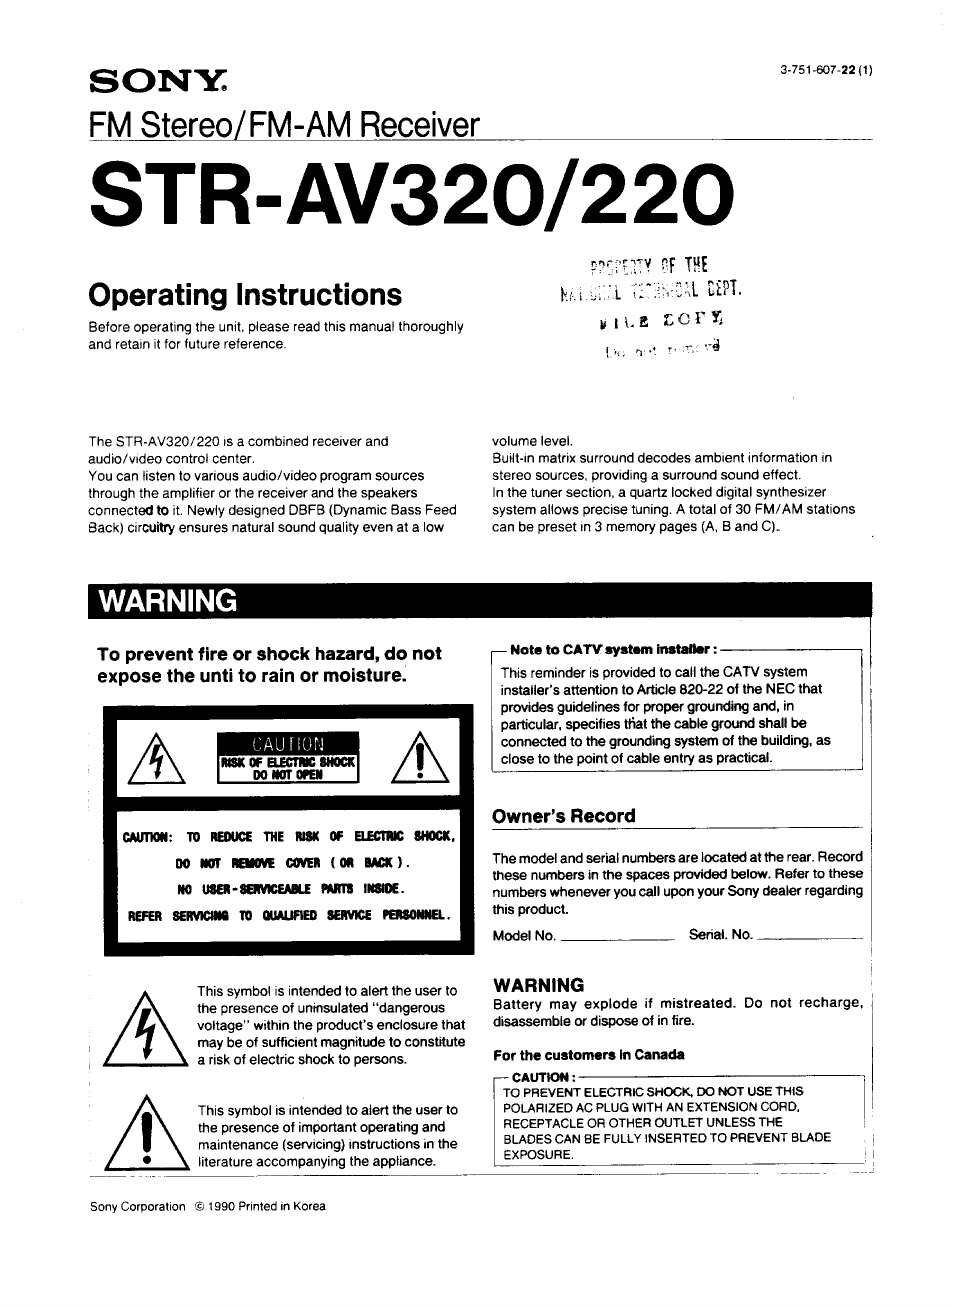 STR-AV320